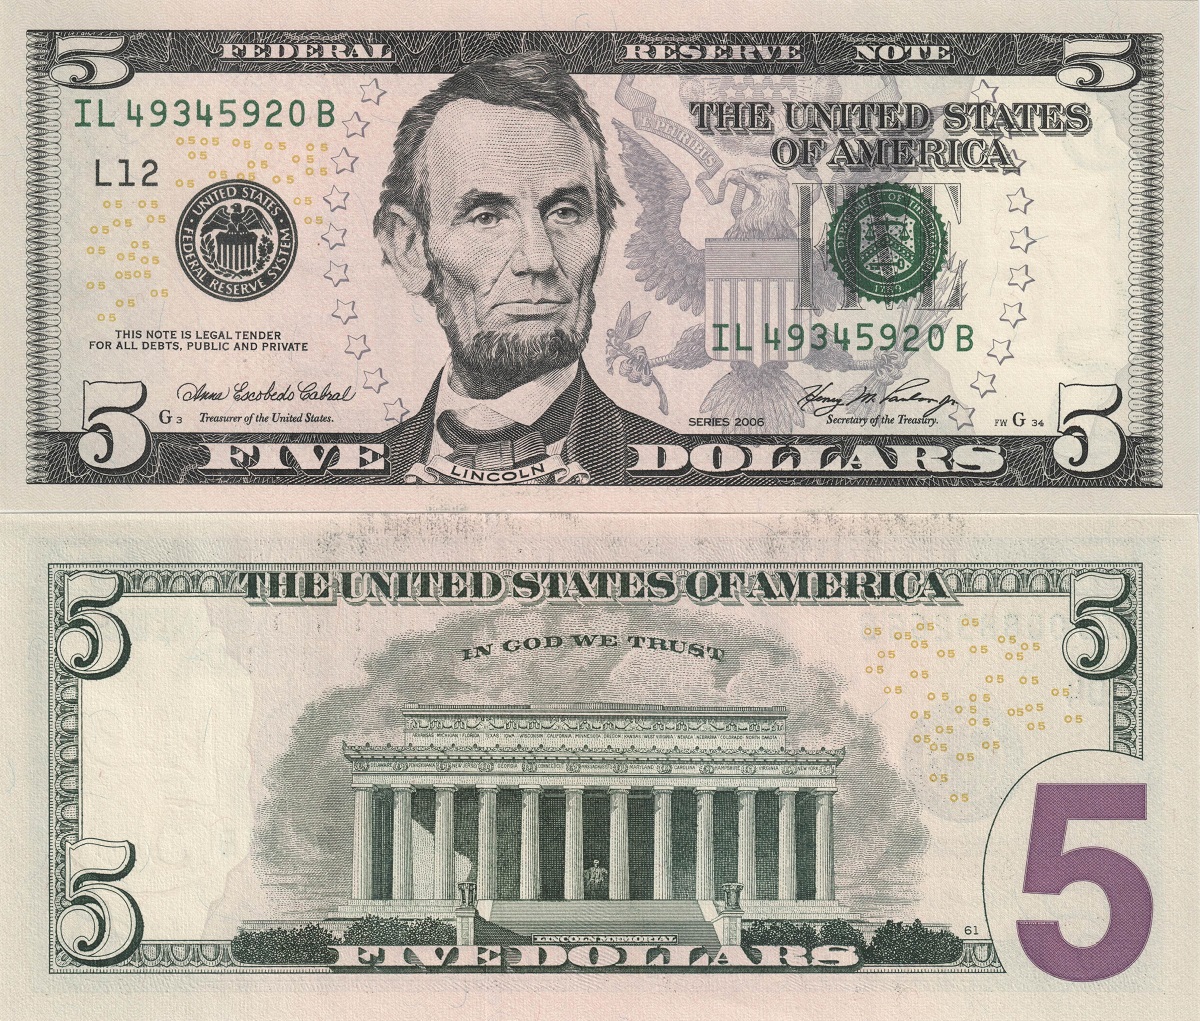 شخصیت ها و چهره های موجود در دلار